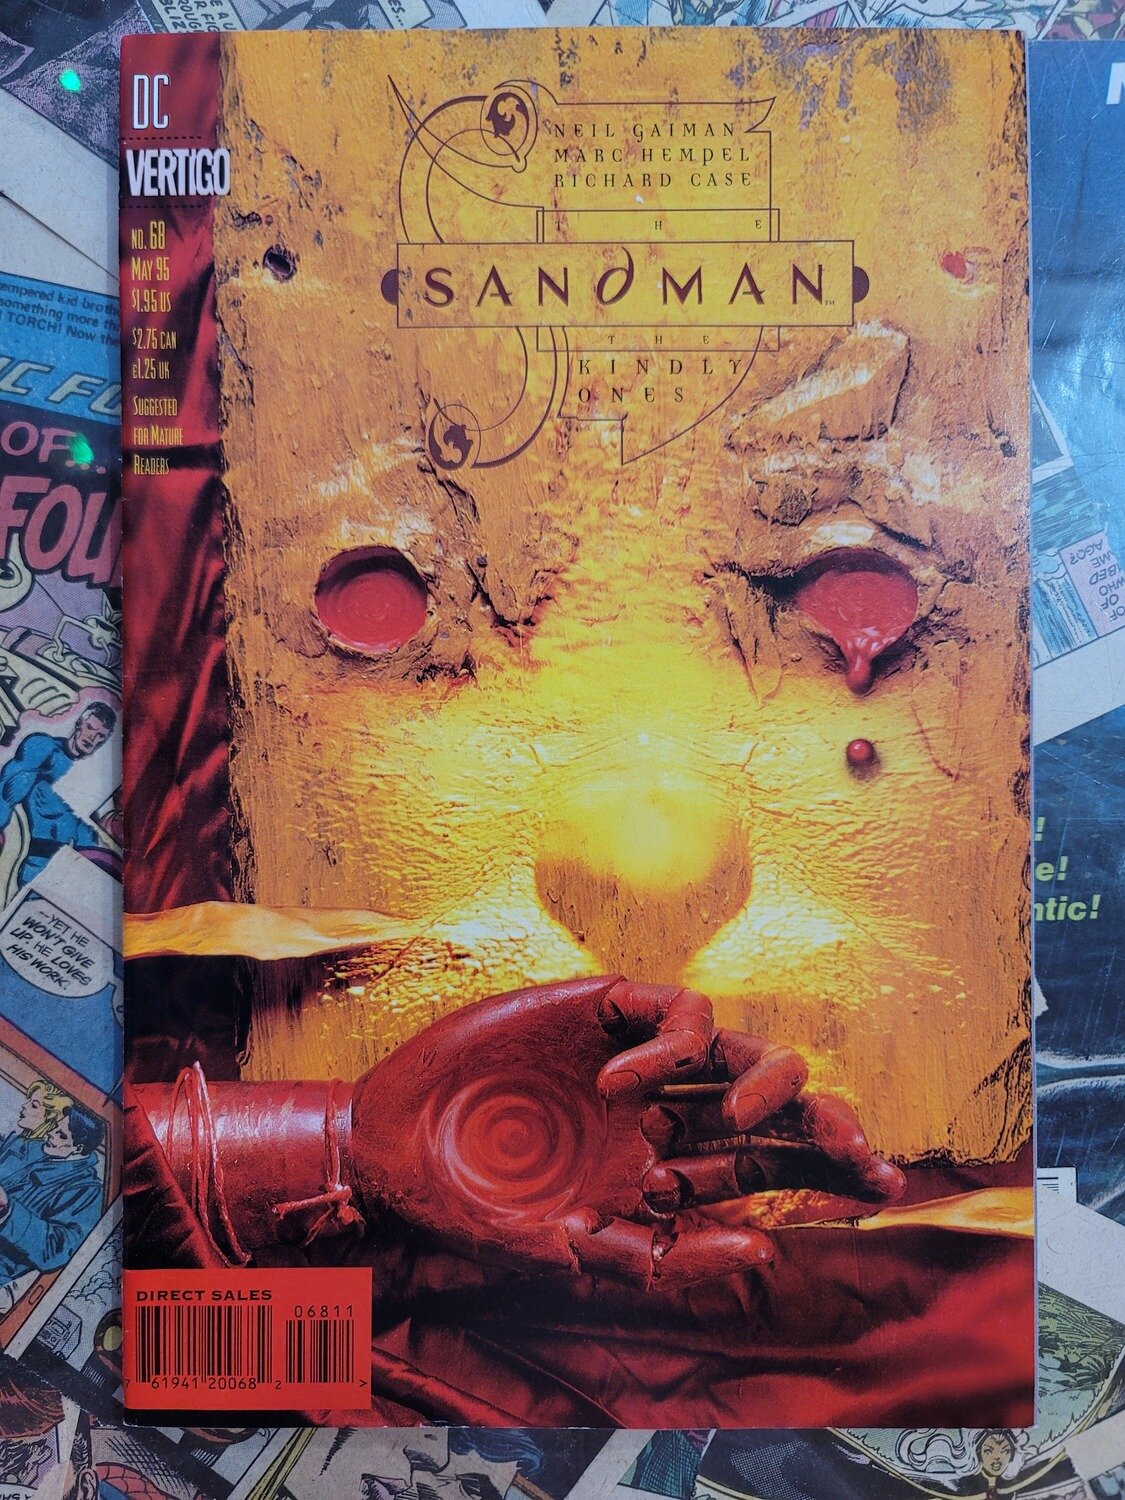 Sandman #68 7.0